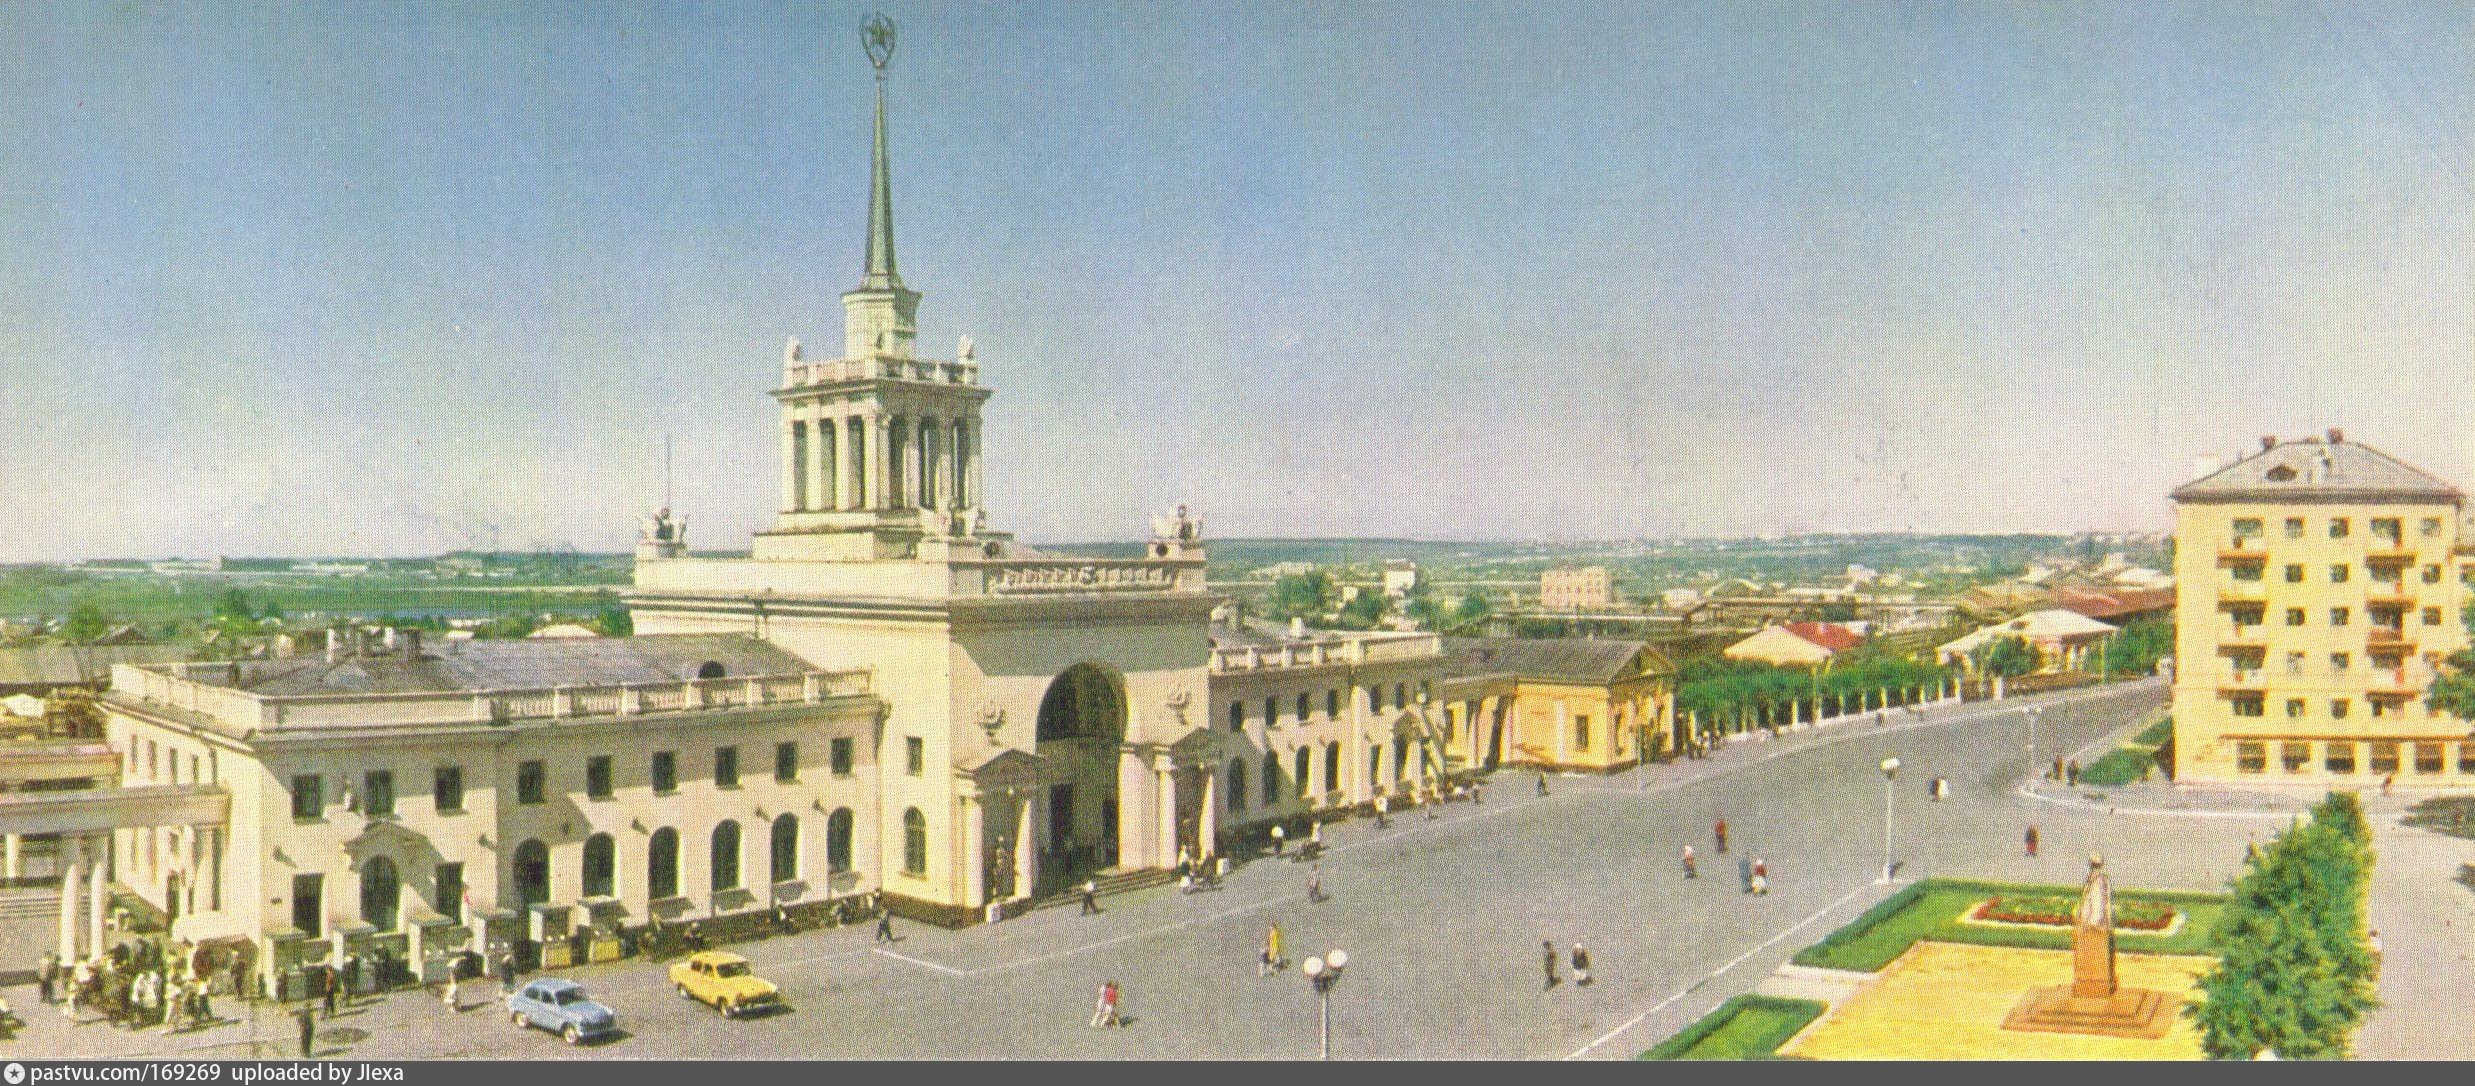 Старый вокзал в ульяновске